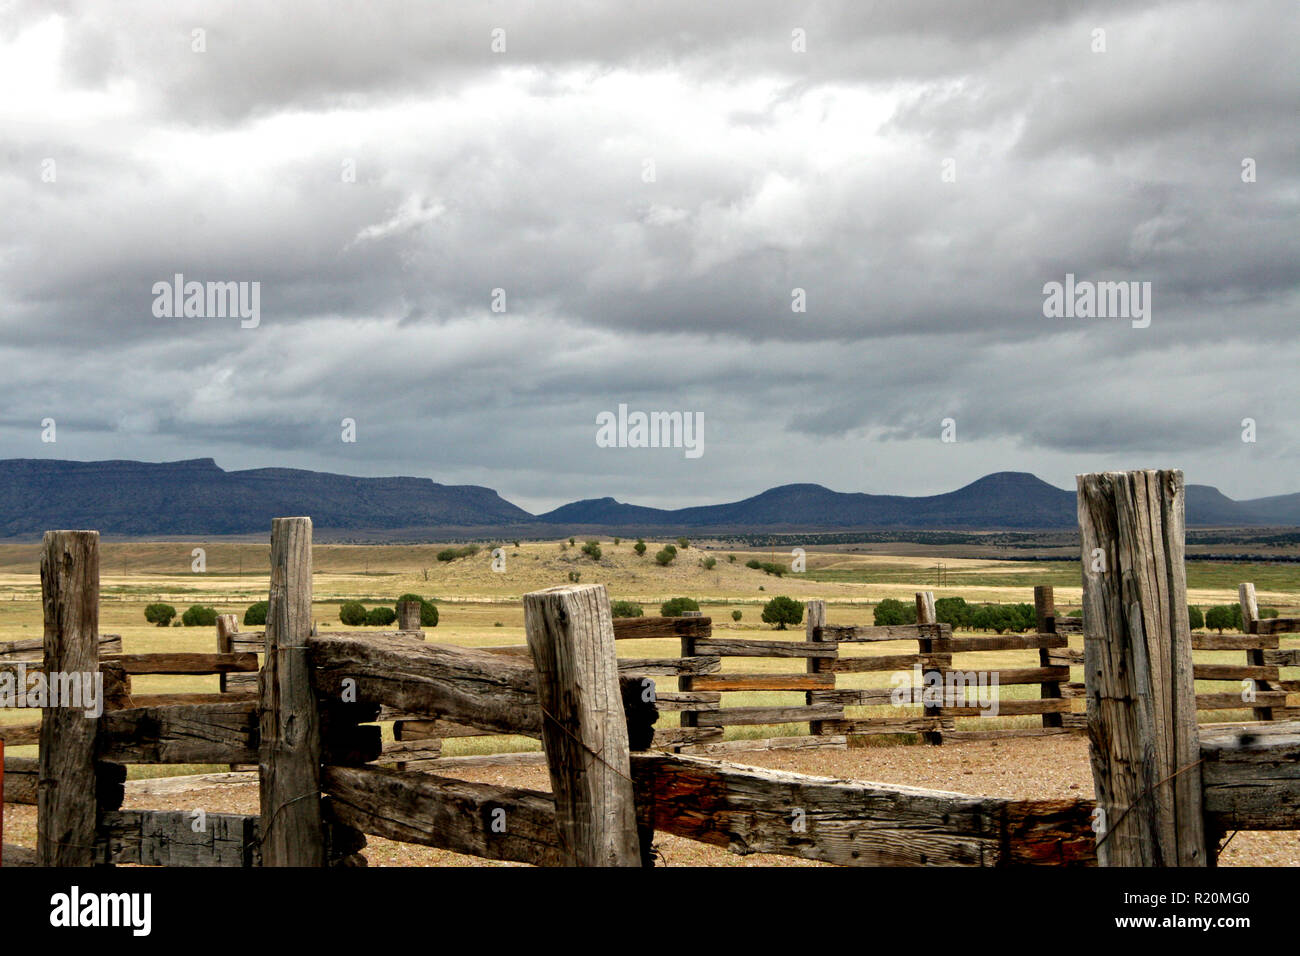 Alto desierto de Arizona rancho vida corrales de esgrima de madera con vistas a las colinas y montañas Foto de stock